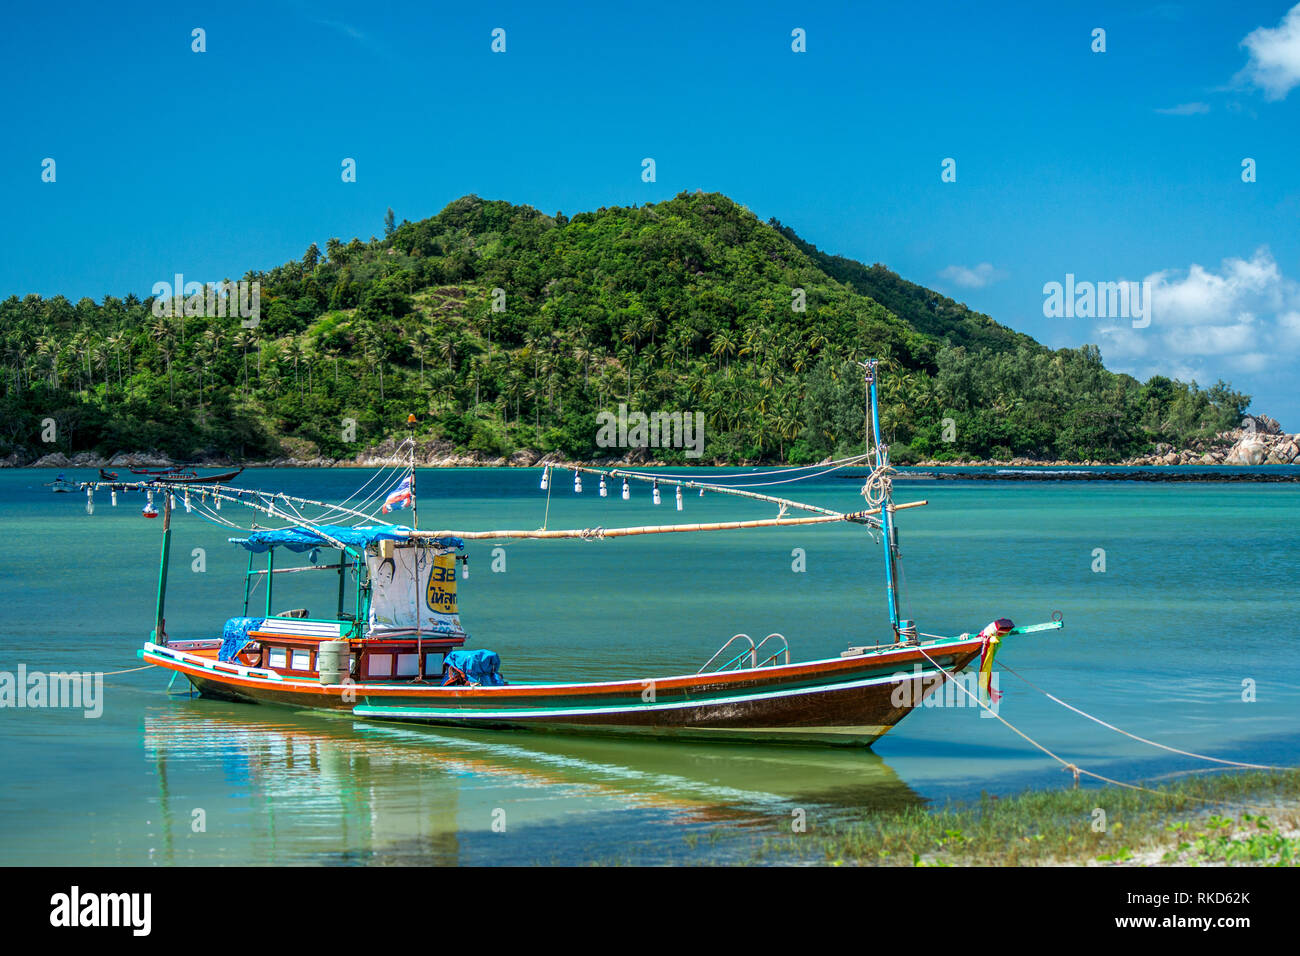 Ein Thai Long tail Boot, verankert in einem schönen Island Bay Lage an der Küste. Stockfoto